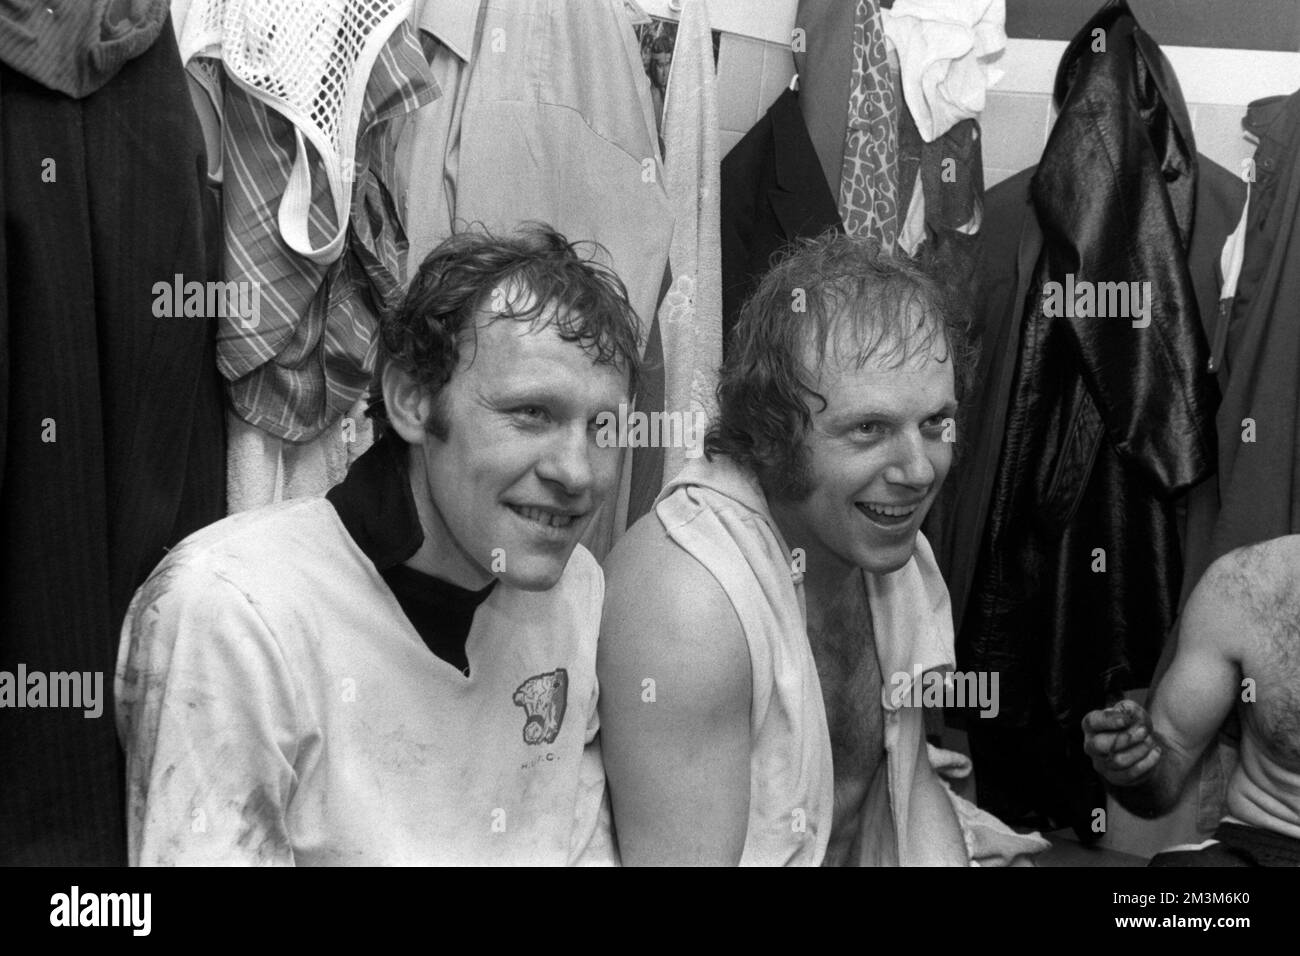 Ablage Foto vom 05-02-1972 von Hereford United's Ronnie Radford (l) und Ricky George (r) in der Garderobe. Radfords Langstrecken-Stunner, der eines der besten Tore der FA Cups erzielte, auf einem riesigen Spielfeld für Hereford gegen die beste Flugseite Newcastle, half dem nicht-Liga-Club 1972, einen riesigen Pokalschock zu erzielen. Es wurde sofort von den Bulls und Radford berühmt. Das Ziel wurde regelmäßig in den Jahren des Sicherstellens gezeigt, und der BBC-Kommentator John Motson gab später zu, dass es zu einer erfolgreichen Karriere beigetragen hat. Radford starb im November im Alter von 79 Jahren. Ausgabedatum: Freitag, 16. Dezember 2022. Stockfoto